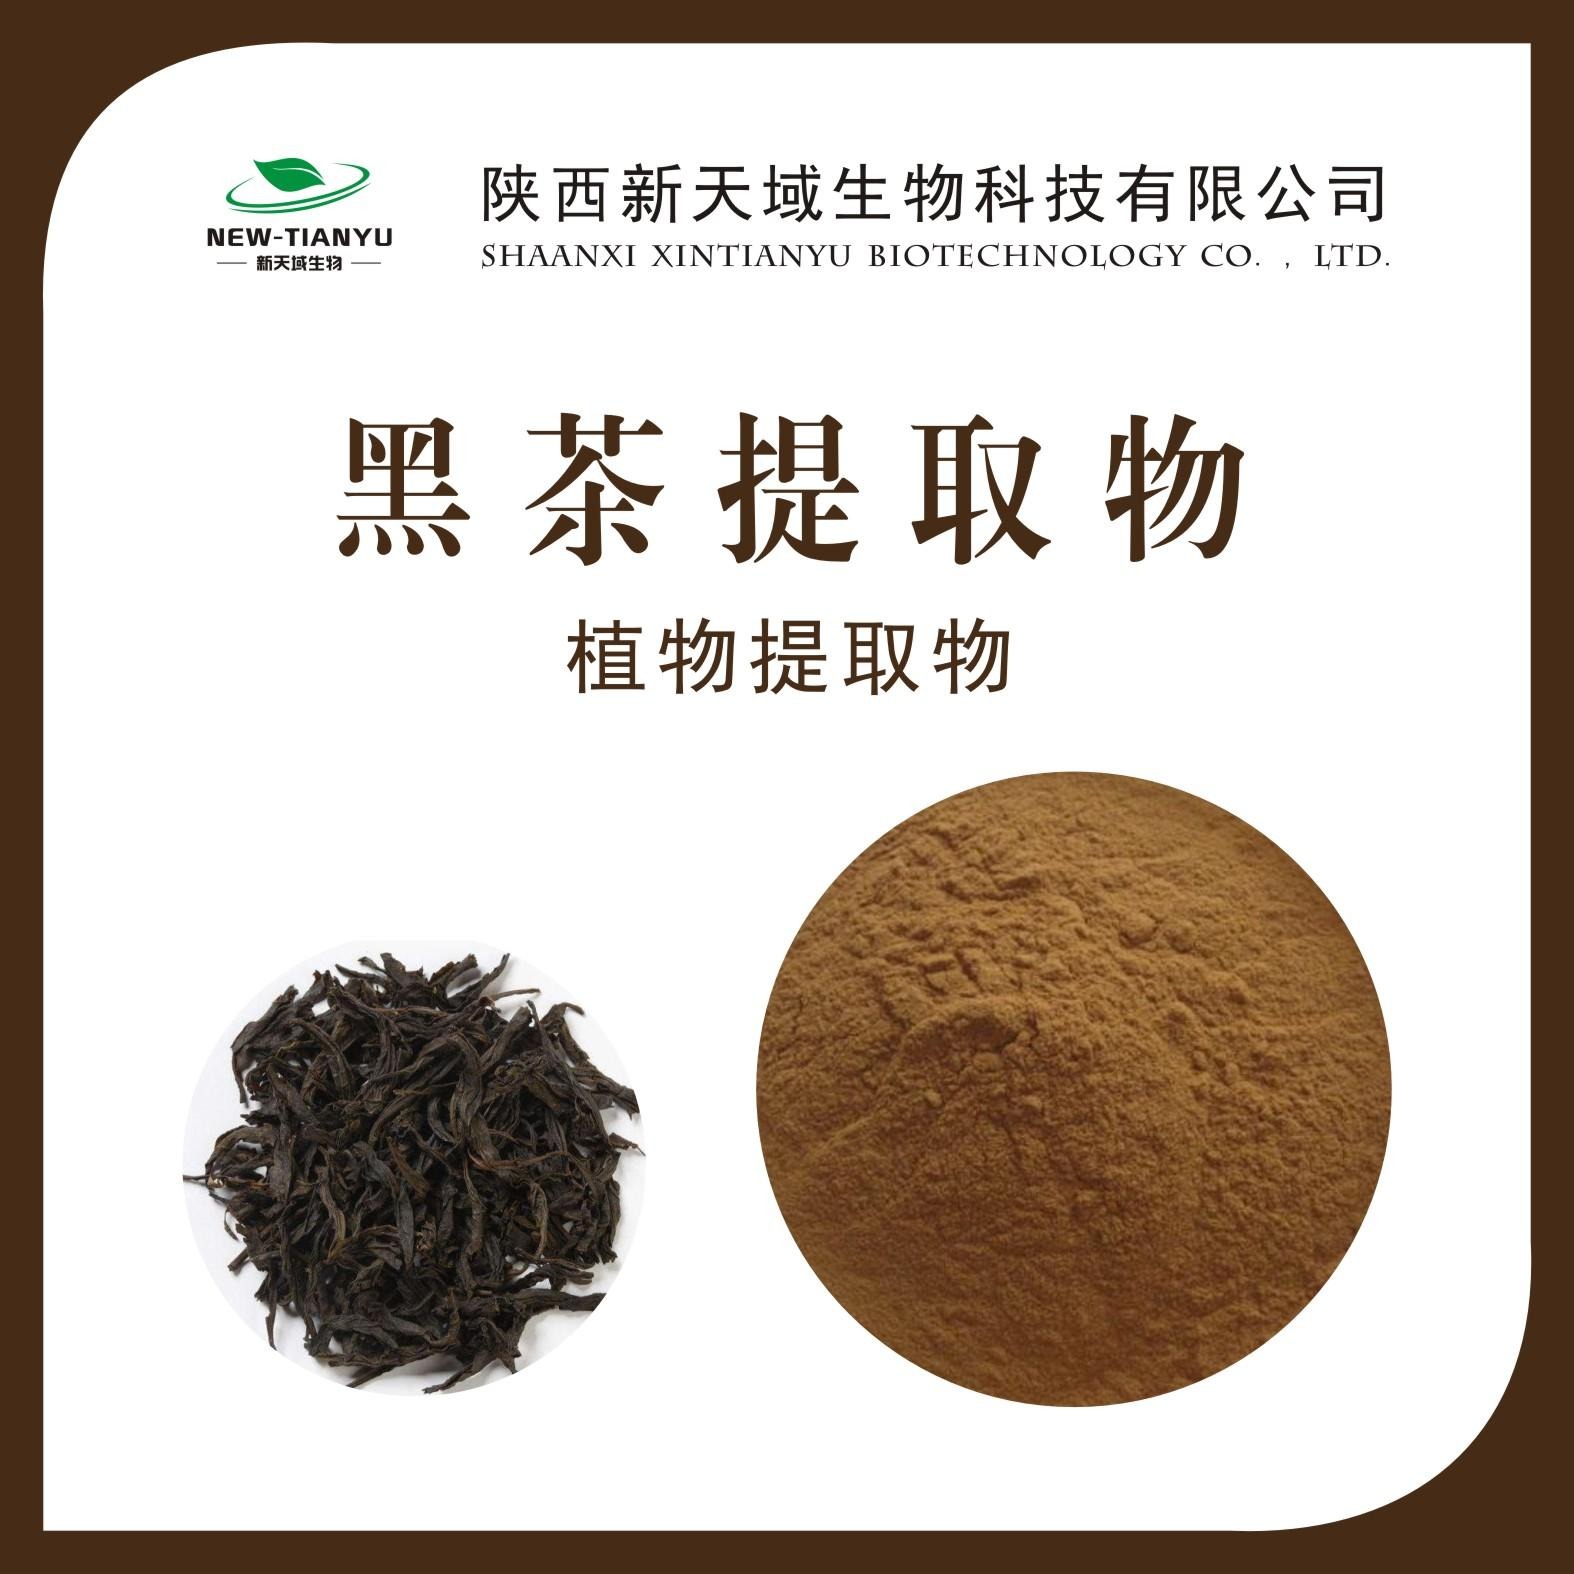 黑茶提取物 黑茶浓缩粉 黑茶喷雾干燥粉 生产厂家 现货包邮图片